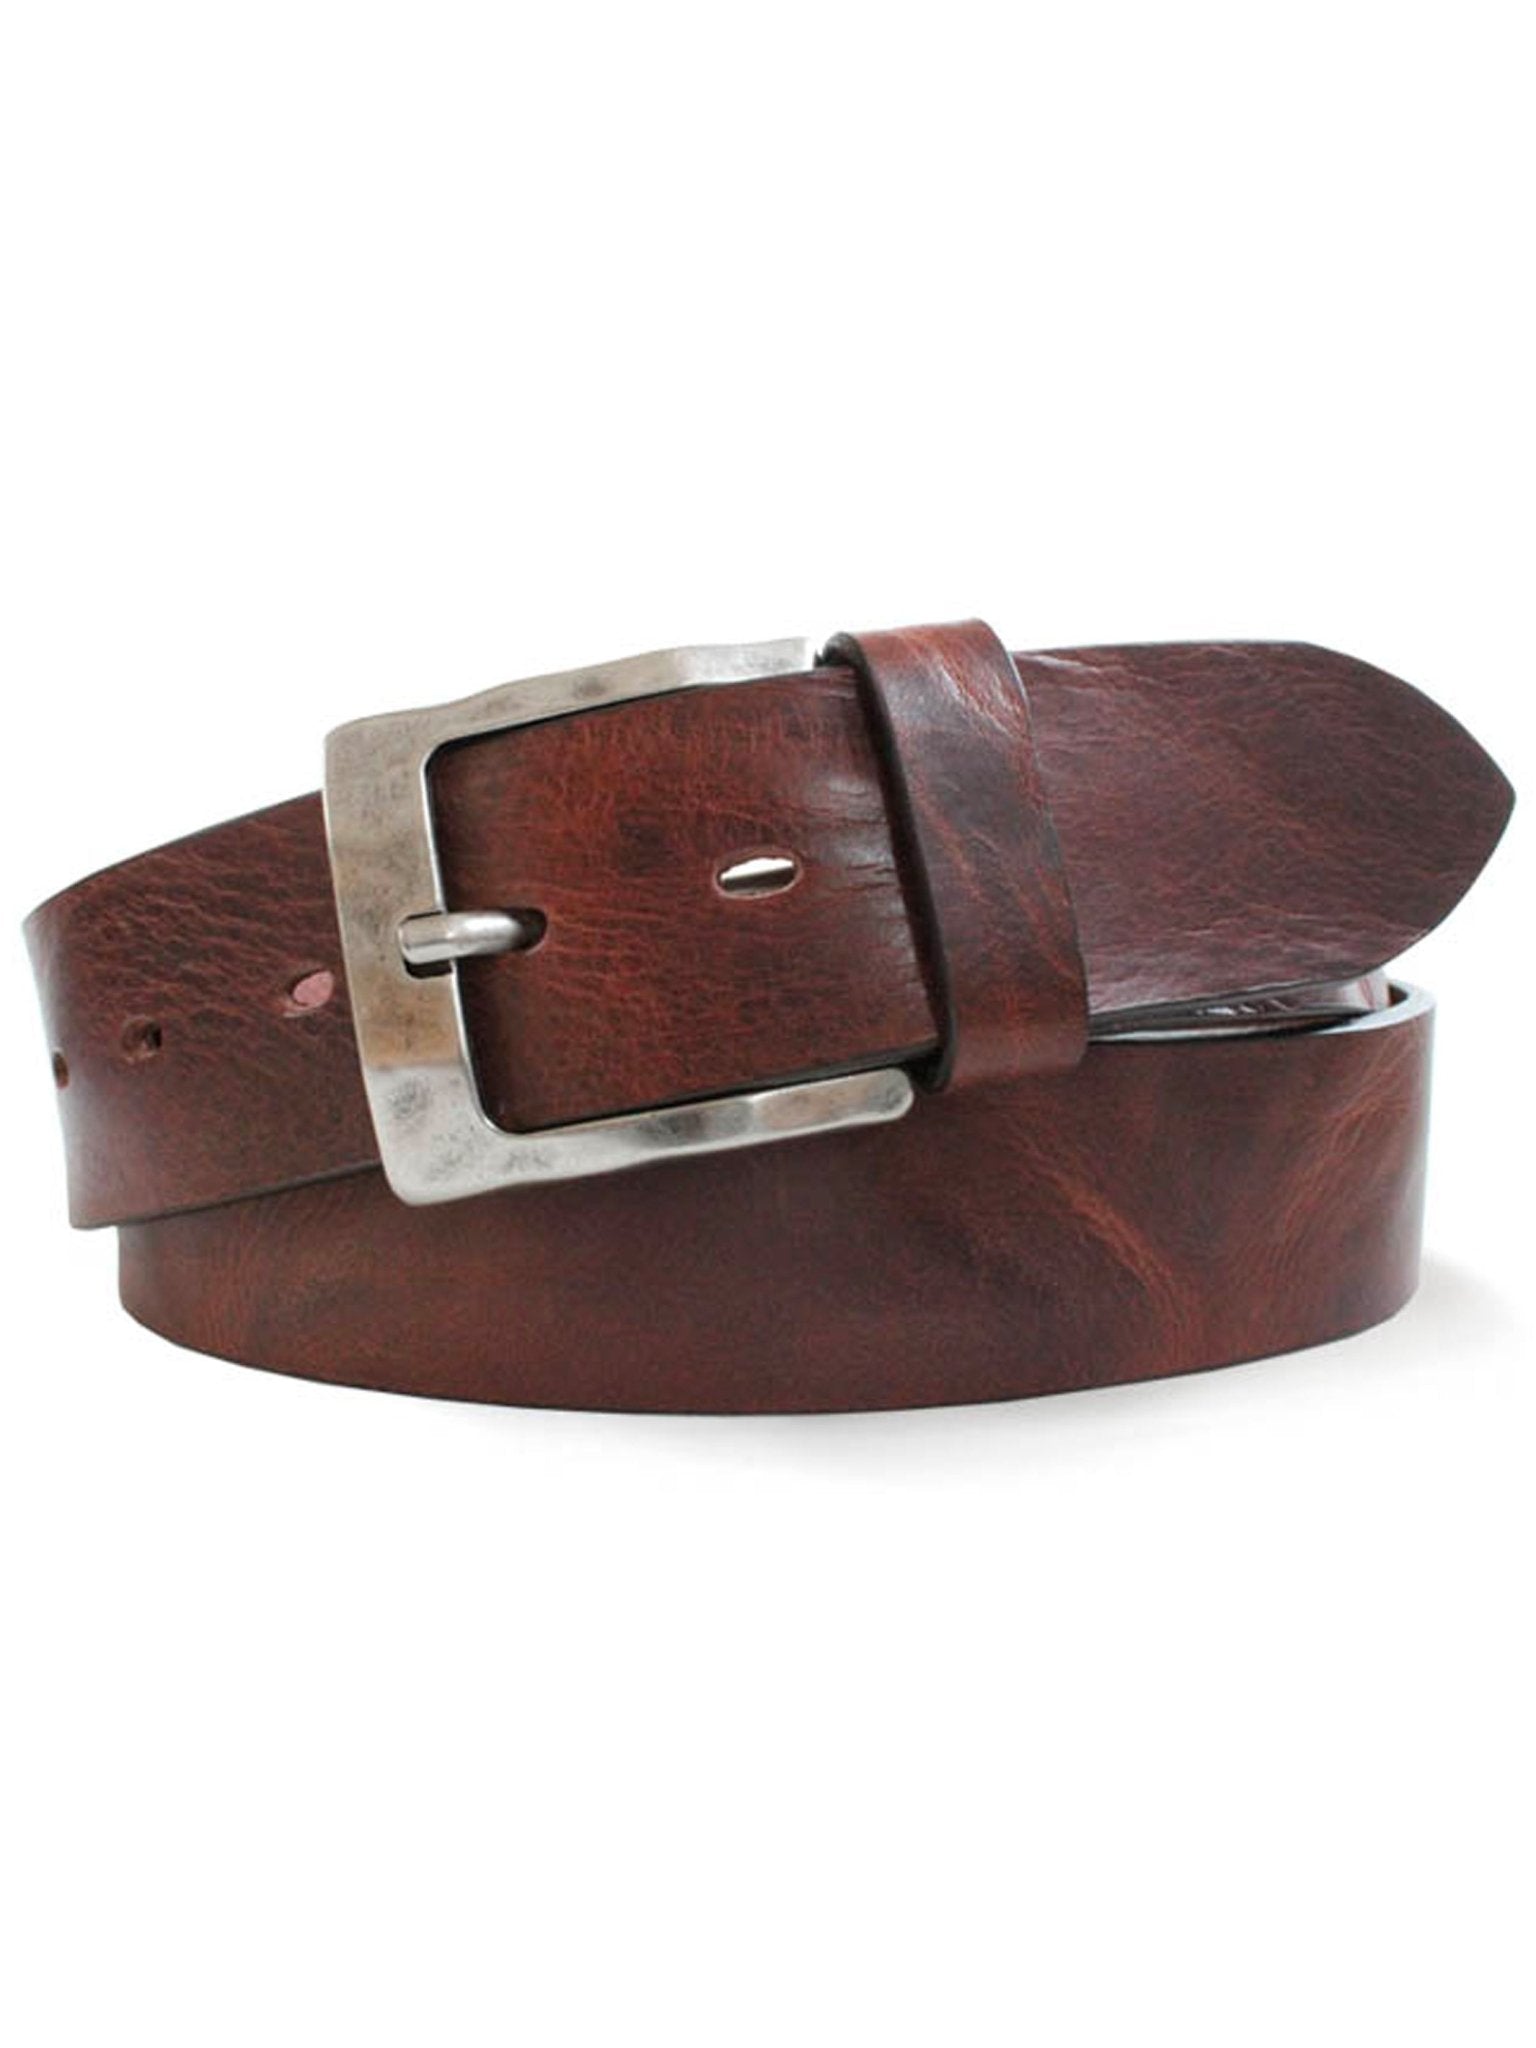 4elementsclothingRobert CharlesRobert Charles Belts - 6307 Burnished Mens Leather Belt - 40mm leather width - Made in ItalyBelts6307/BROWN/S